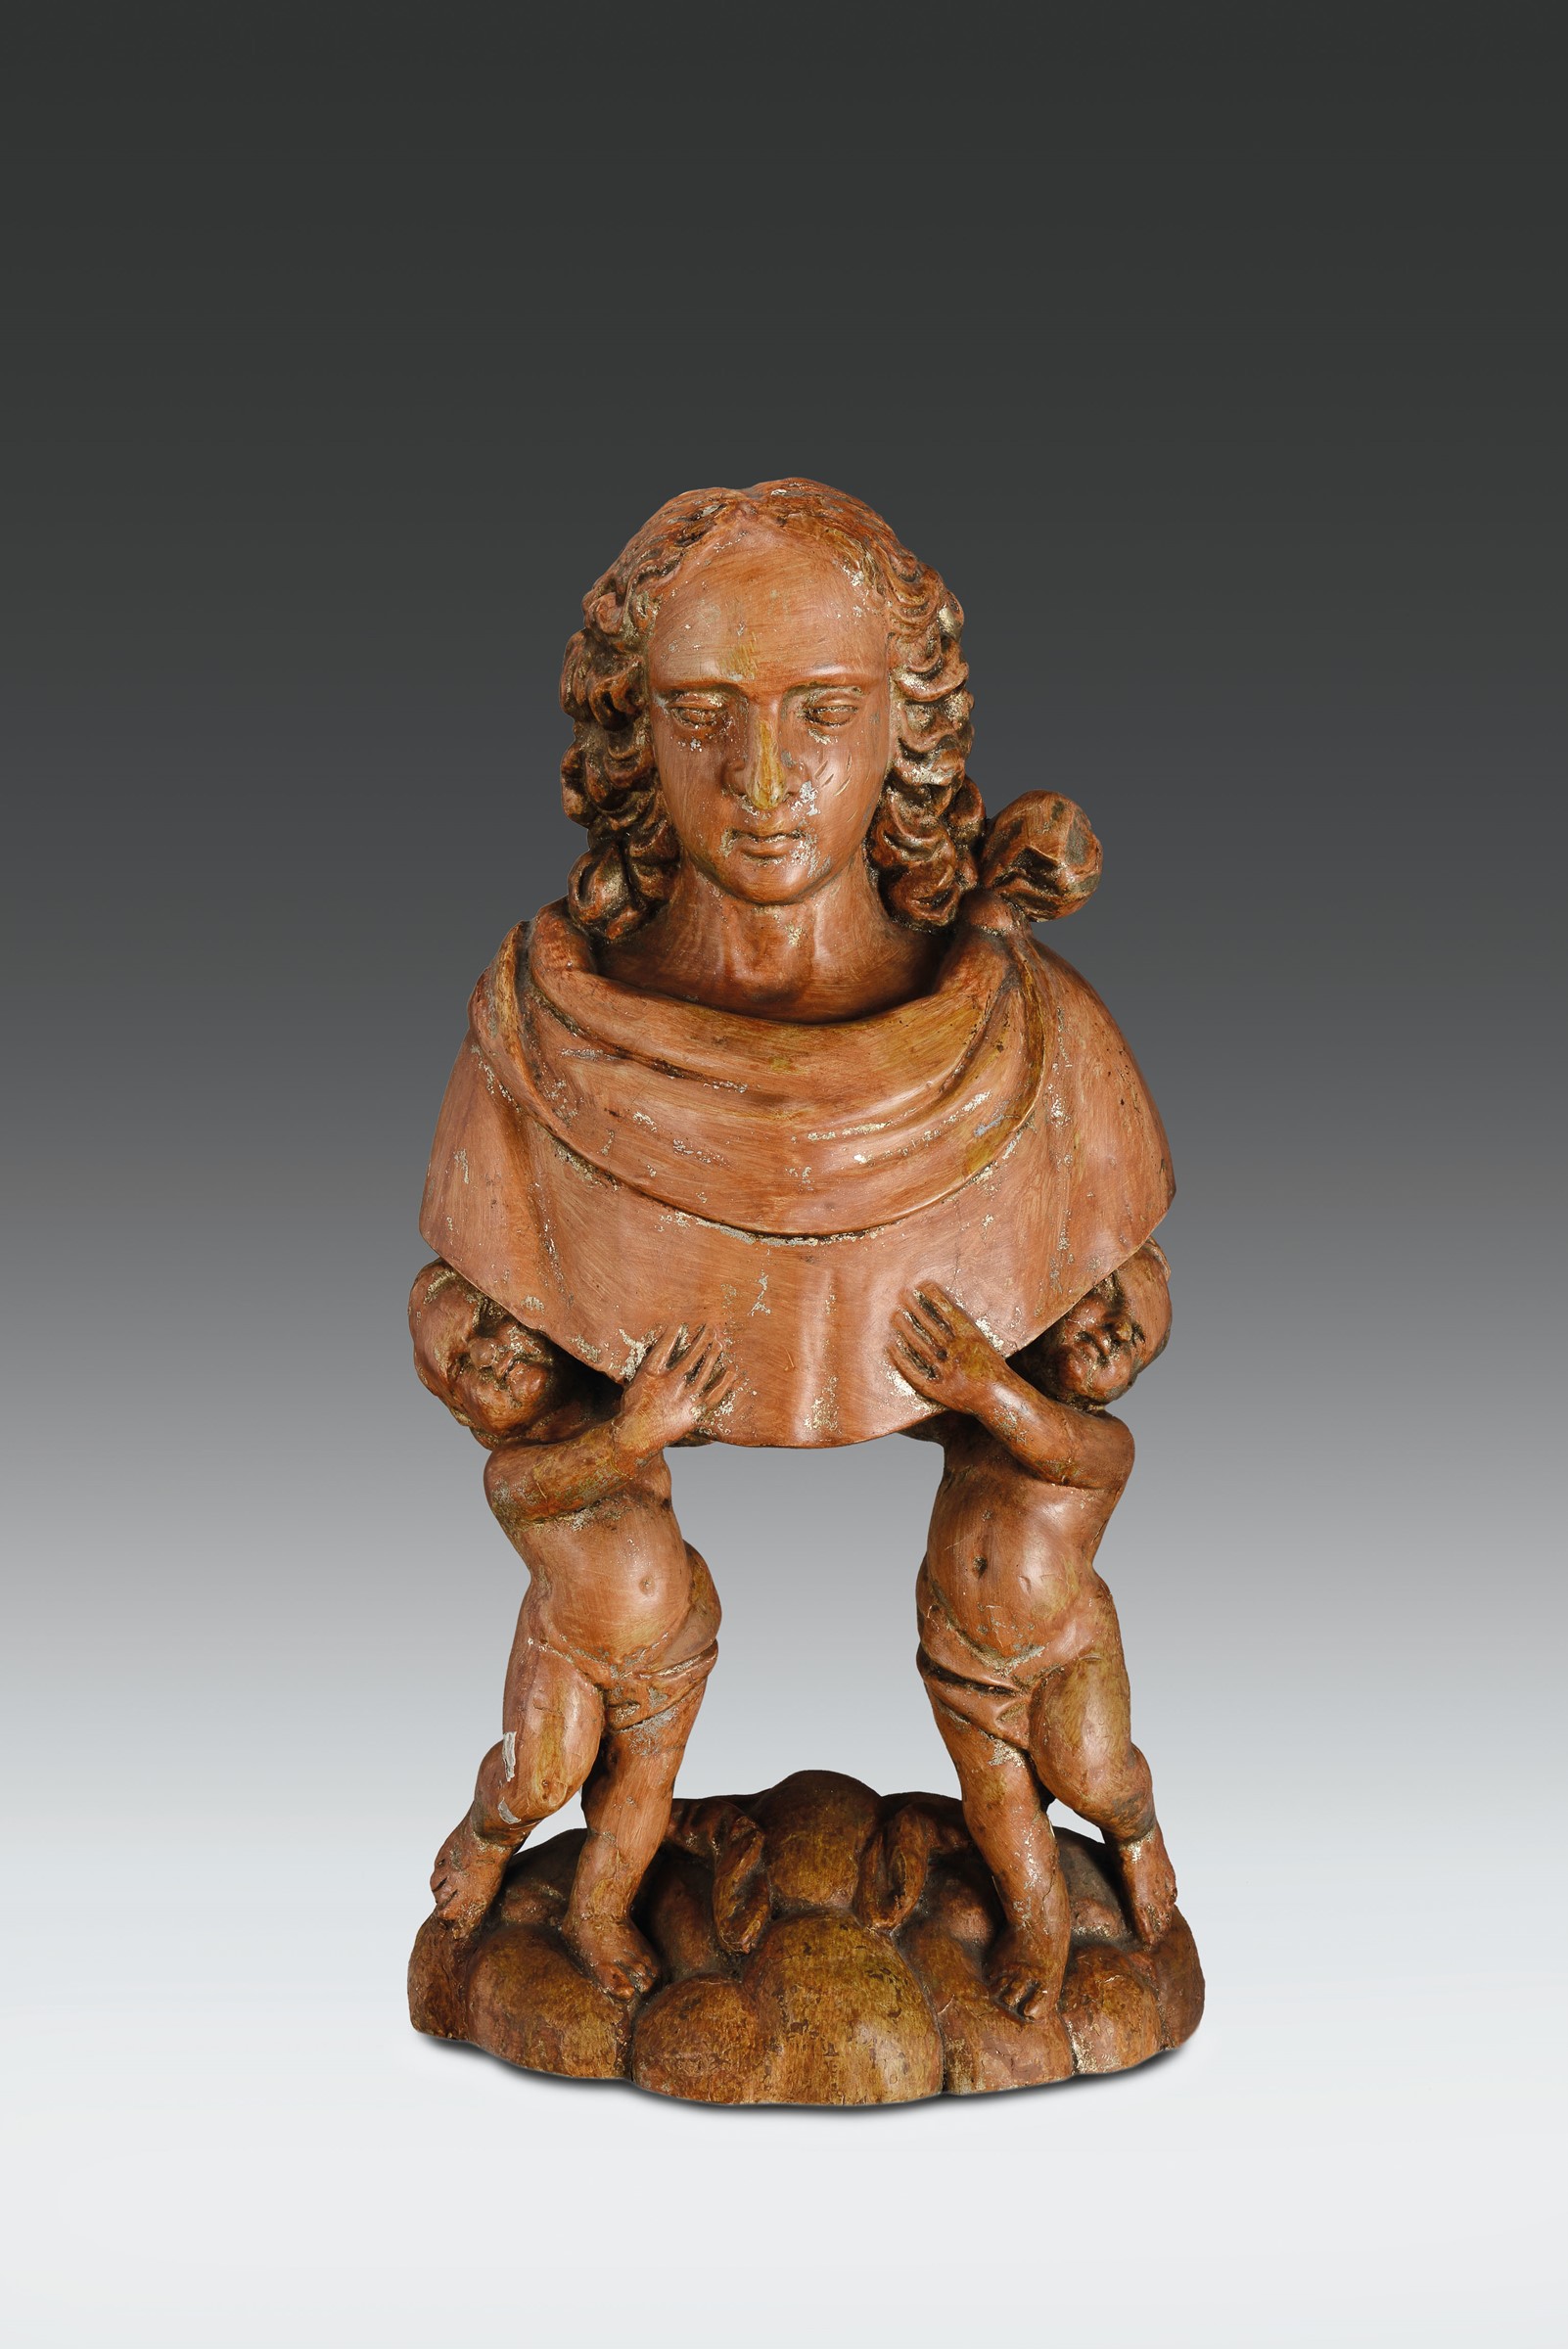 Coppia di busti in legno scolpito, scultore barocco italiano del XVII secolo, altezza cm 68, Le